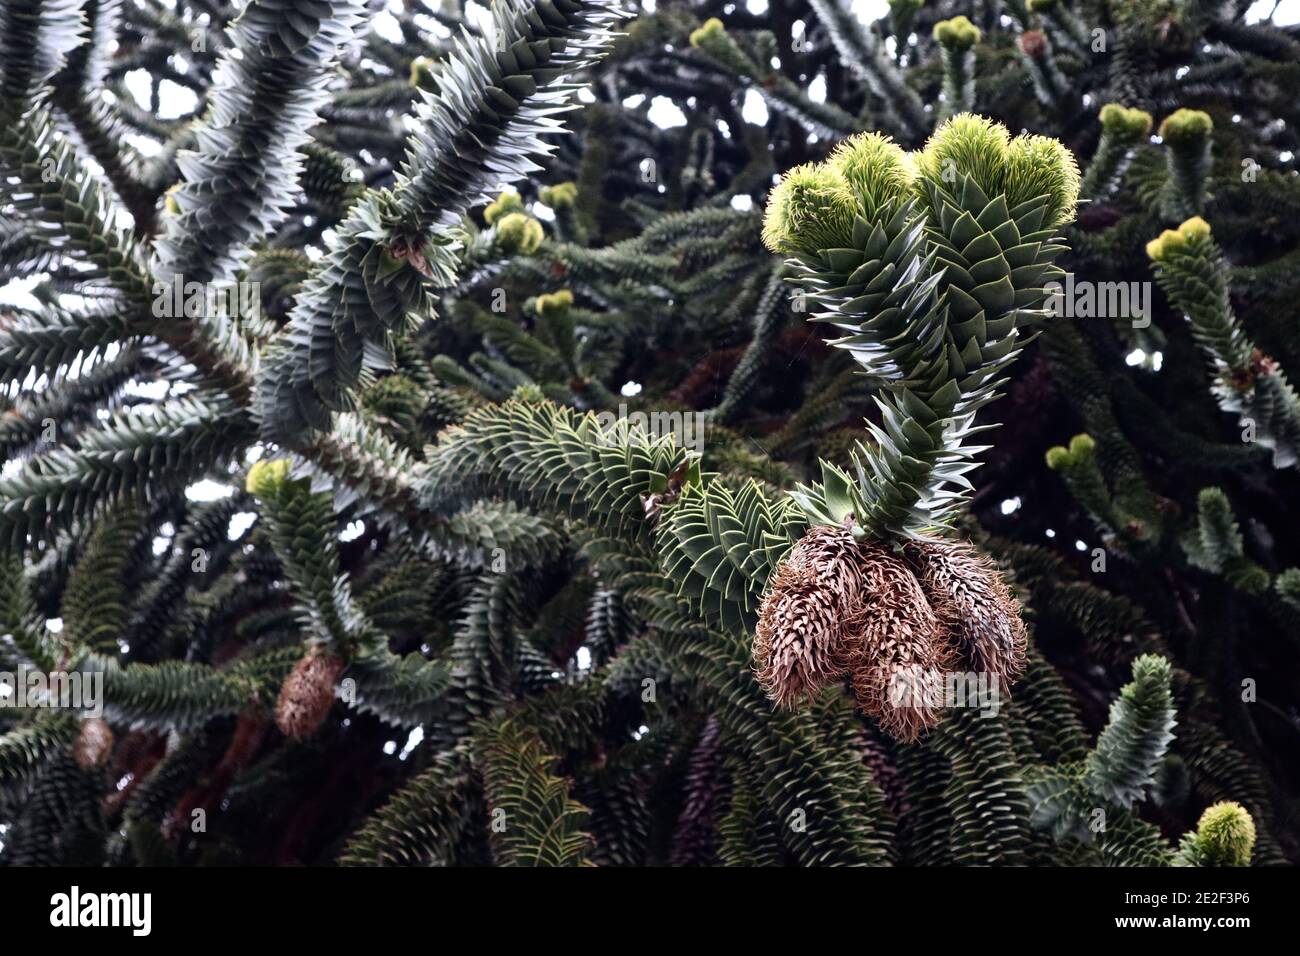 Araucaria araucana Monkey puzzle tree with male cones,  January, England, UK Stock Photo